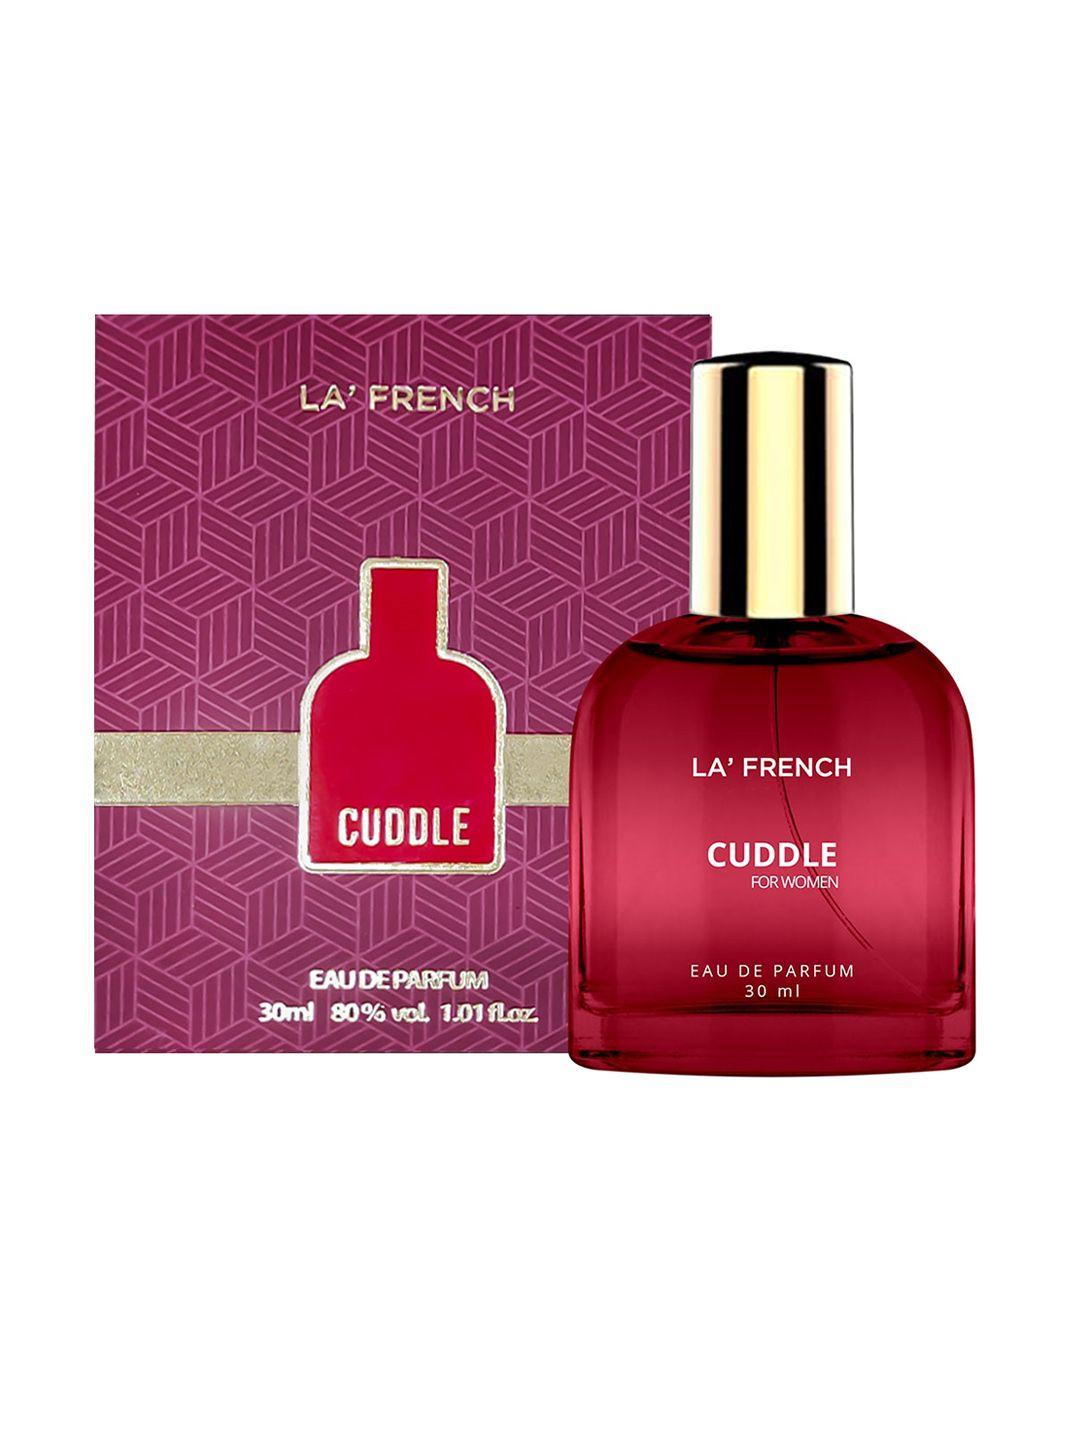 la french set of 2 hooked & cuddle eau de parfum - 30ml each